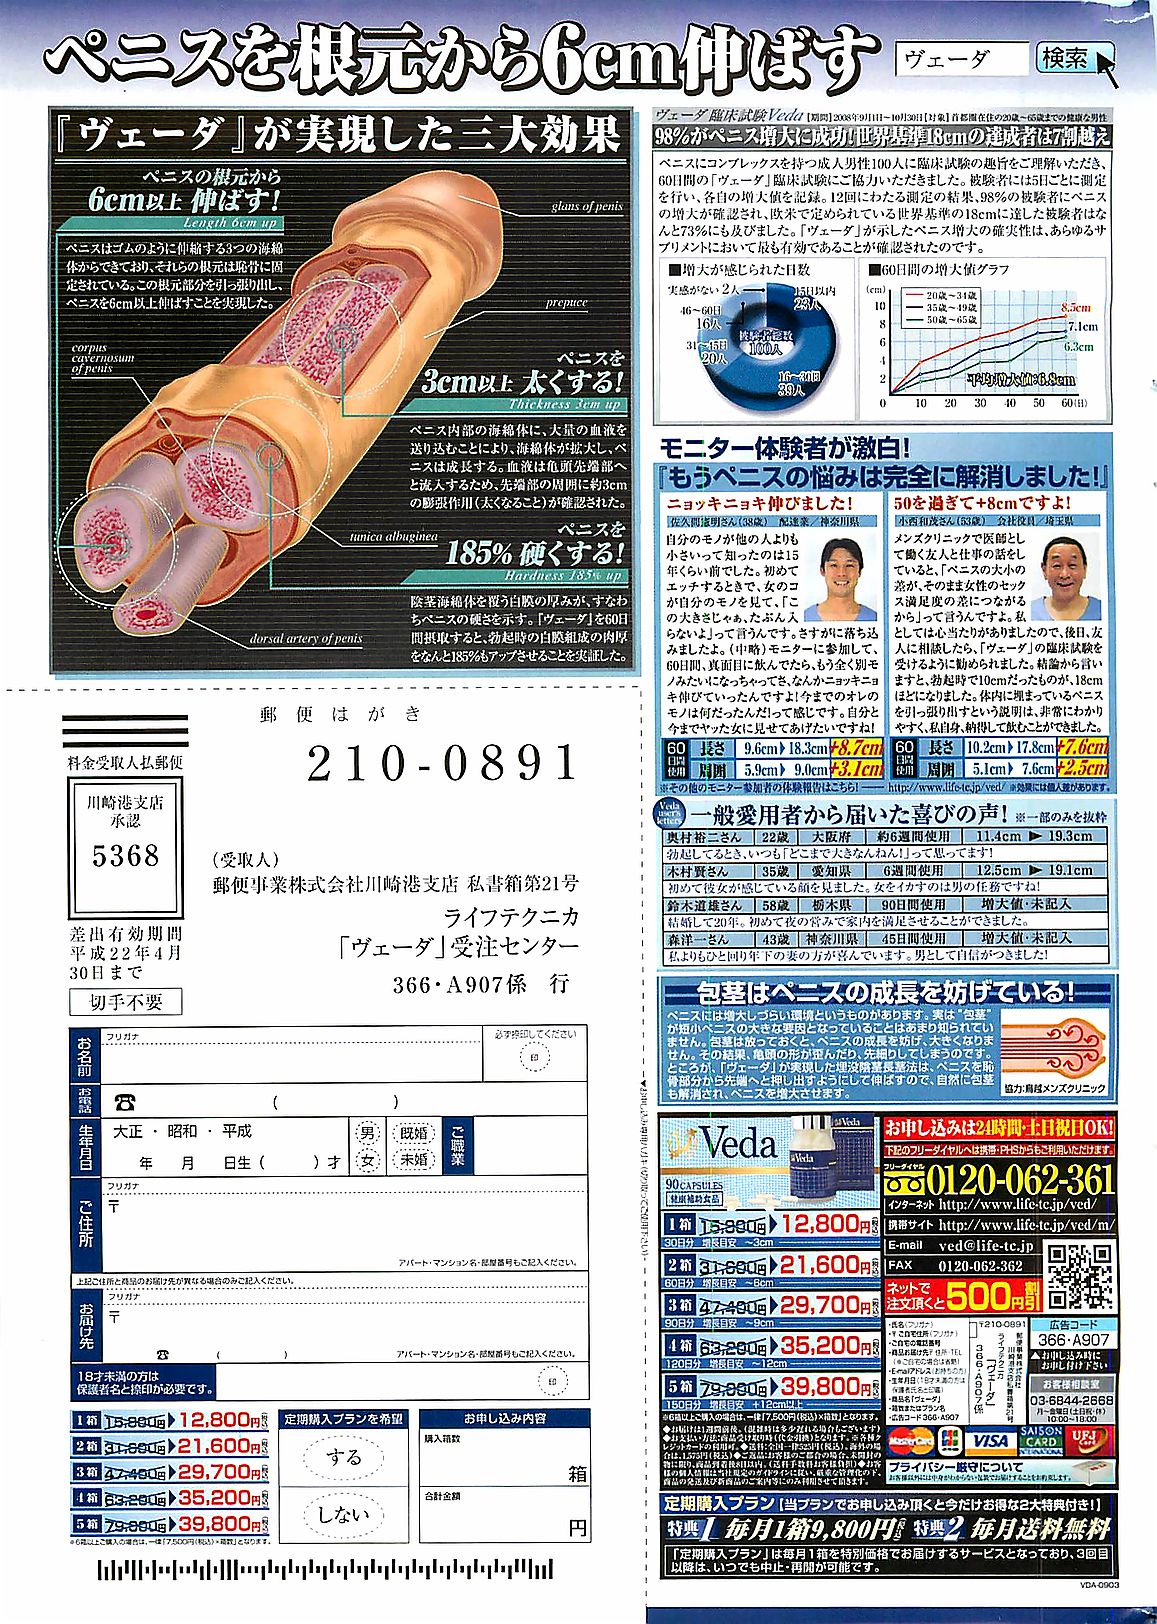 月刊ドキッ! 2009年7月号 Vol.153